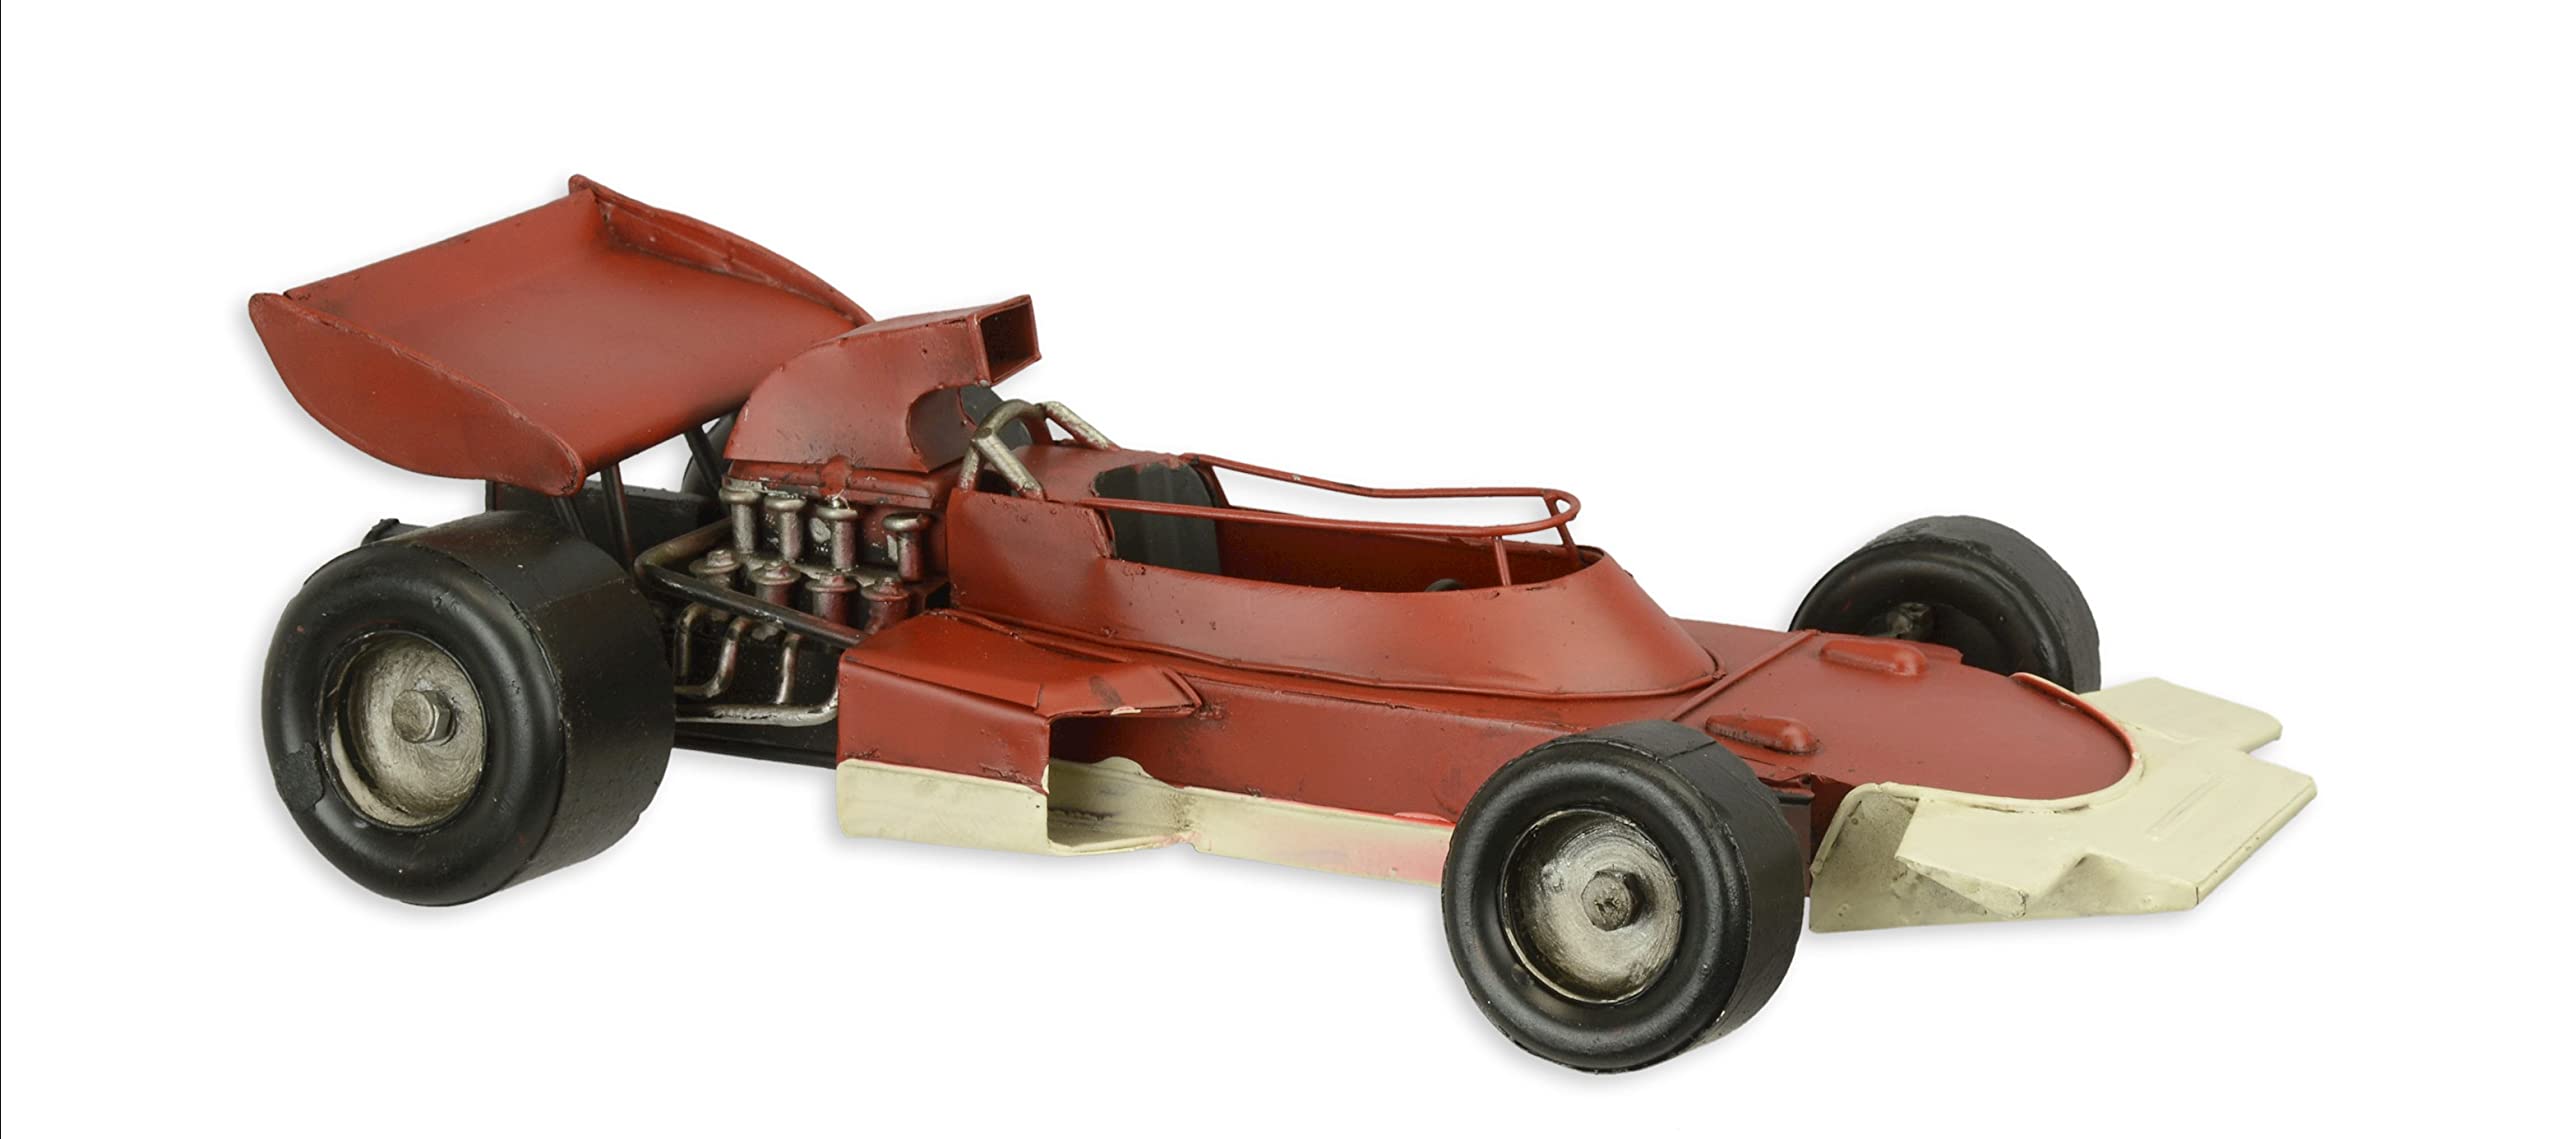 Nostalgie - Modell Rennwagen Formel1 ROT Blechauto Retro-Deko Modellauto